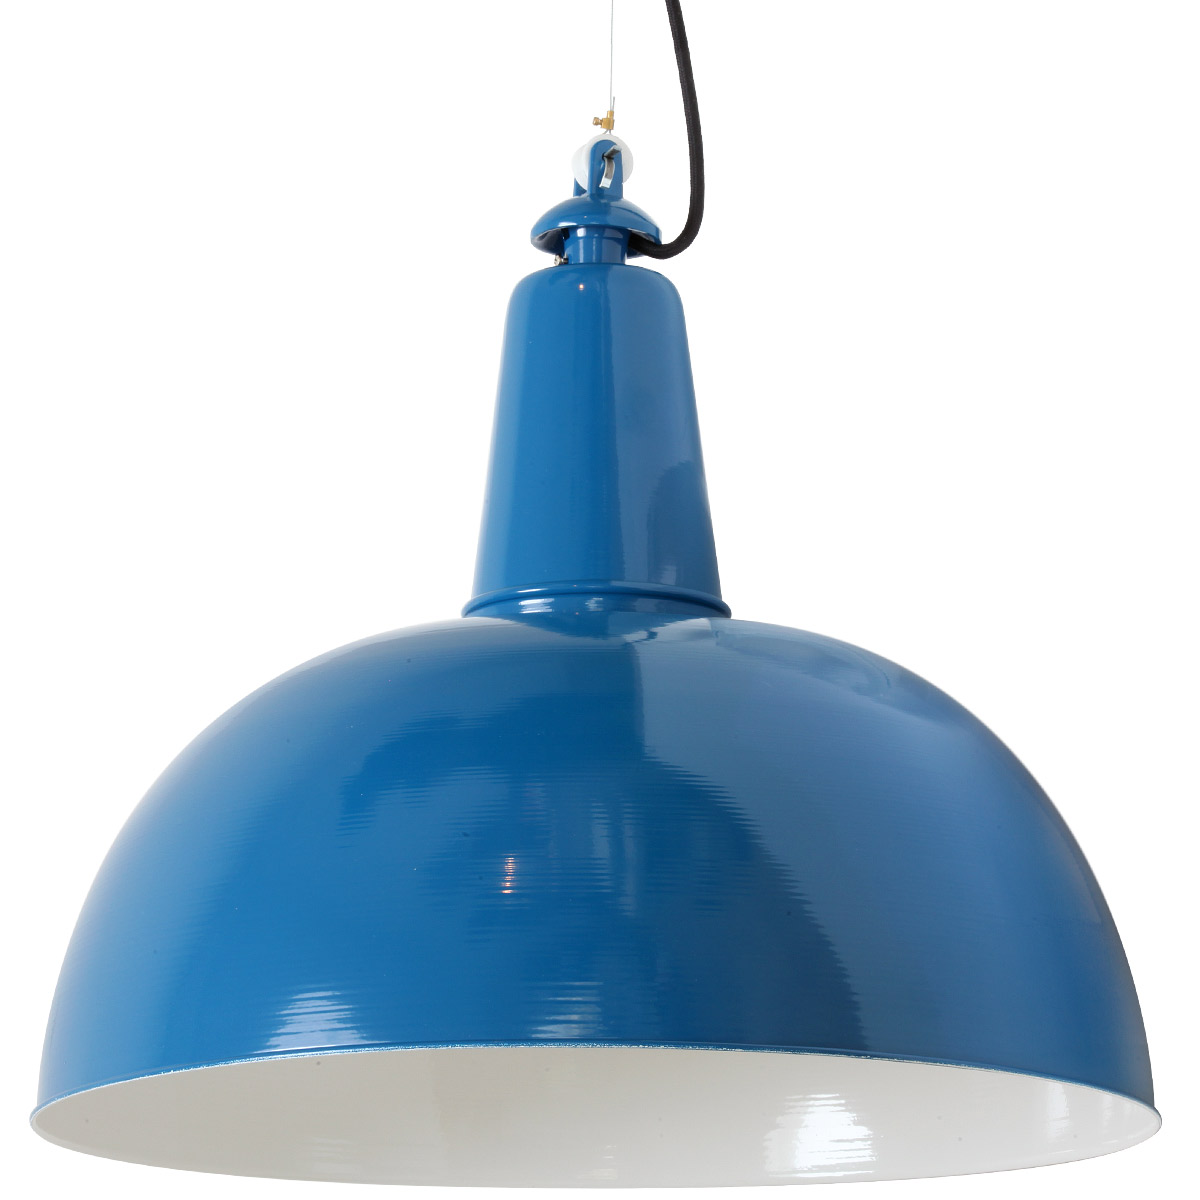 KÖLN Fabrik-Hängeleuchte mit Halbkugel-Blechschirm: Für große Tische: Blaue Pendelleuchte KÖLN mit voluminösem 500-mm-Schirm, Stahlseil-Aufhängung (RAL 5019 Capriblau)